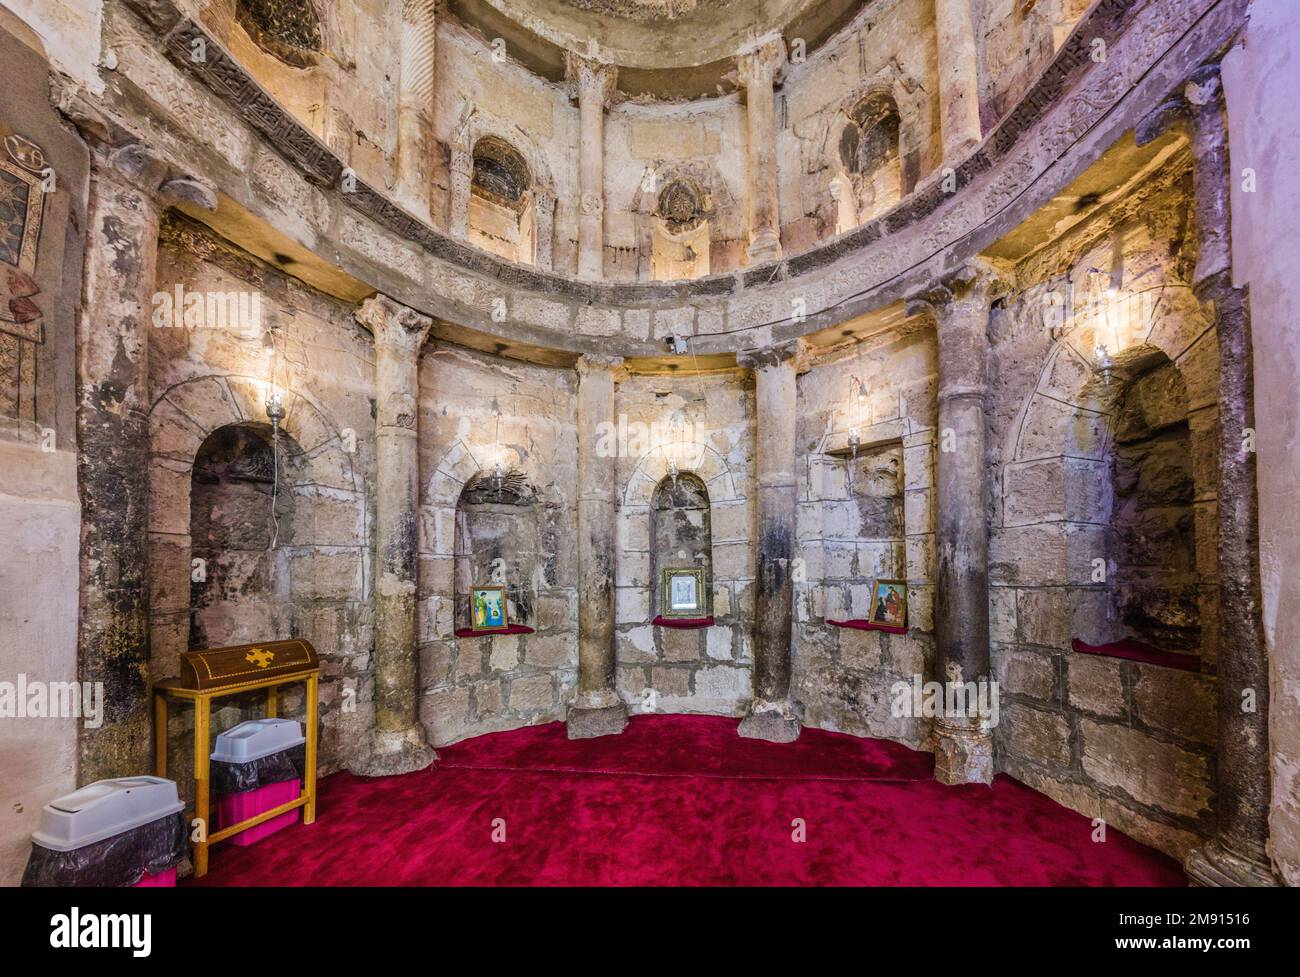 SOHAG, EGYPTE: 11 FÉVR. 2019: Intérieur du monastère blanc copte (Deir al Abyad) près de Sohag, Egypte Banque D'Images